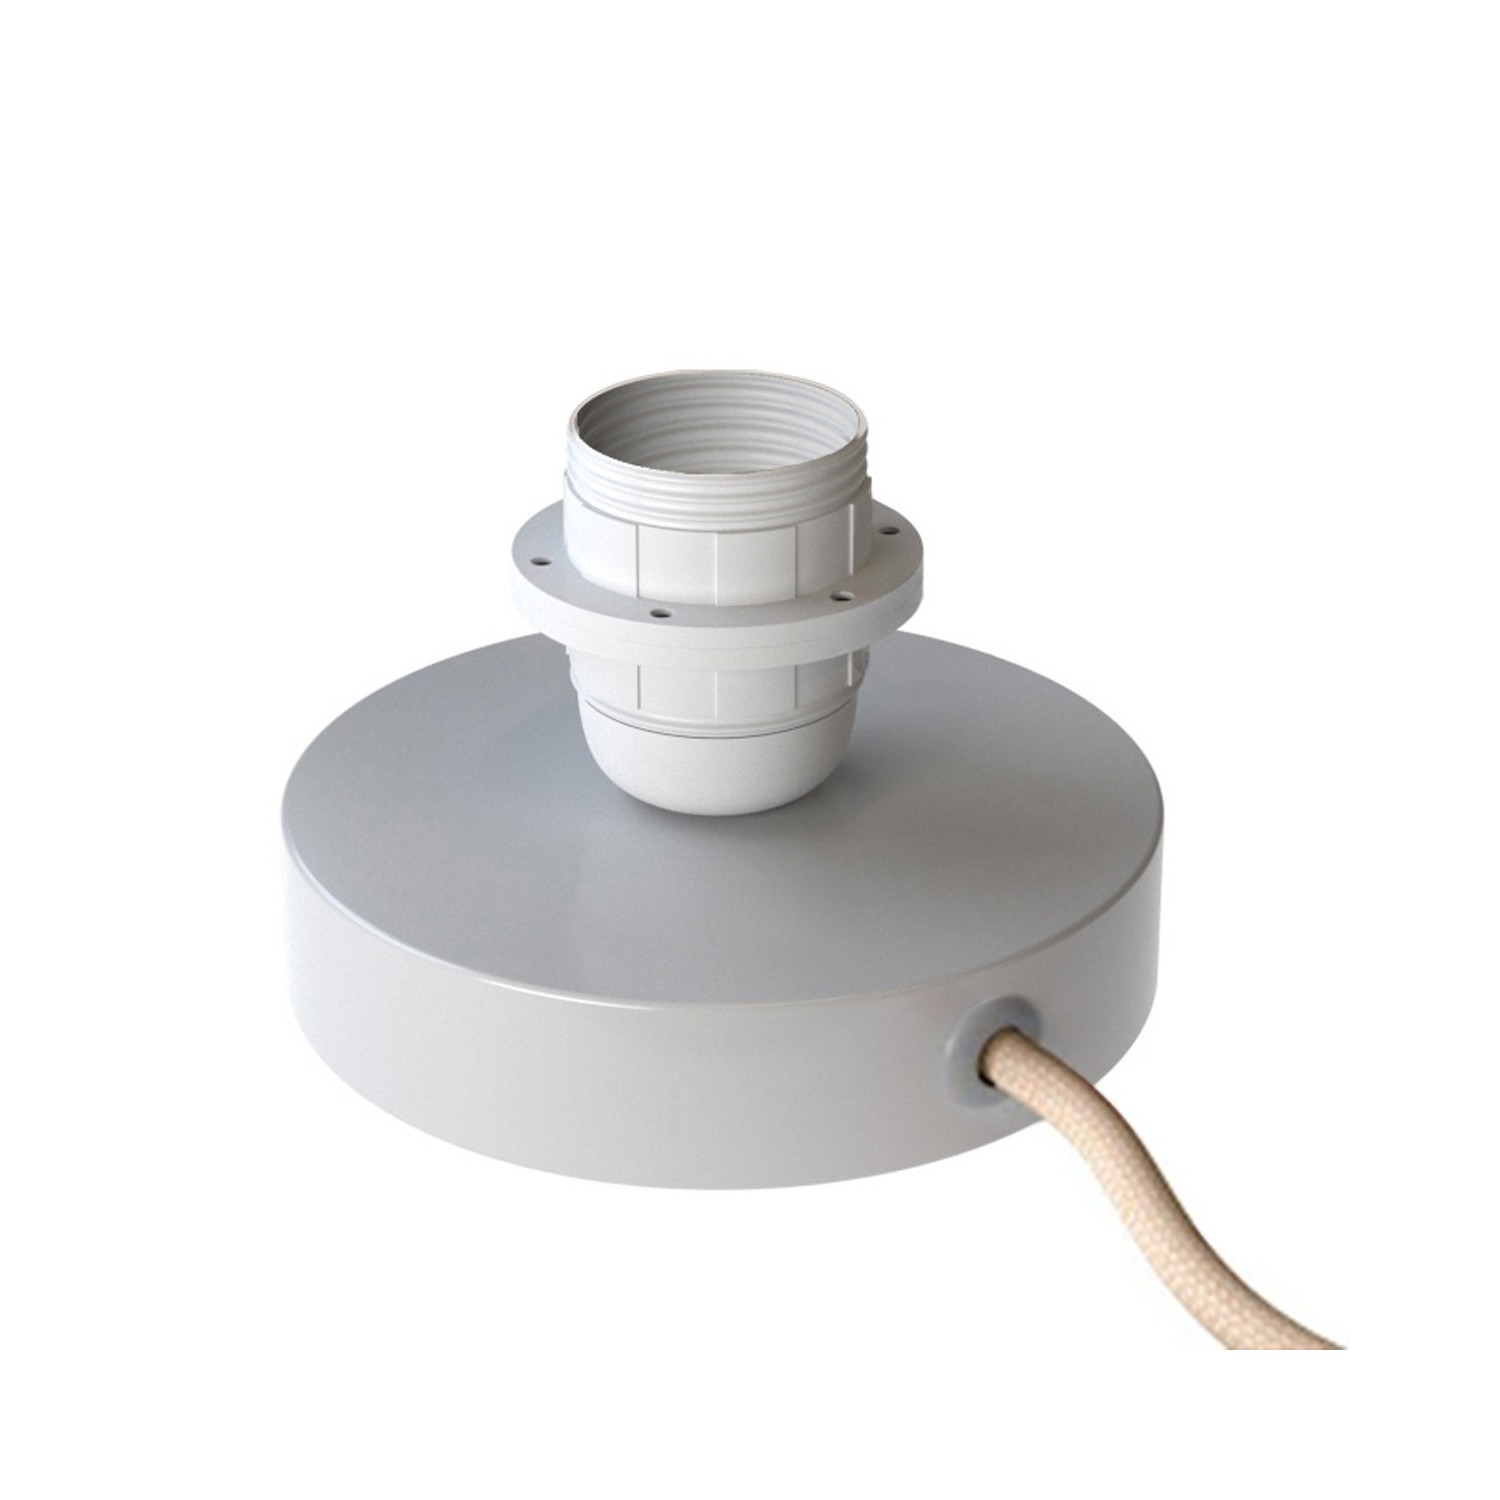 Posaluce for lampshade - Metal table lamp